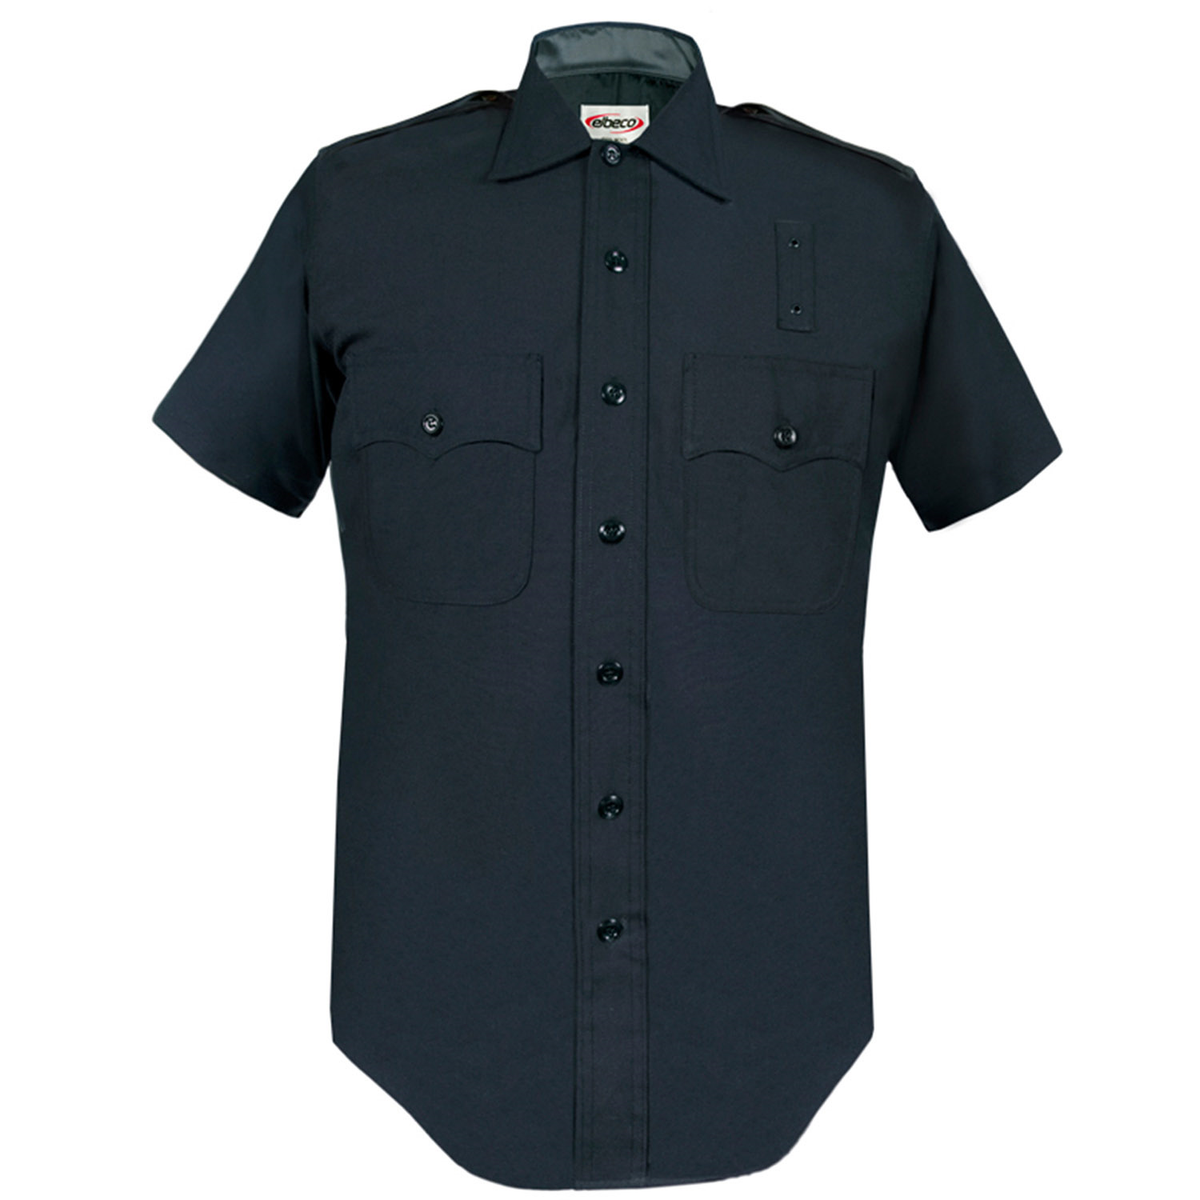 Elbeco LAPD Short Sleeve Uniform Shirt – Sunburst Uniforms